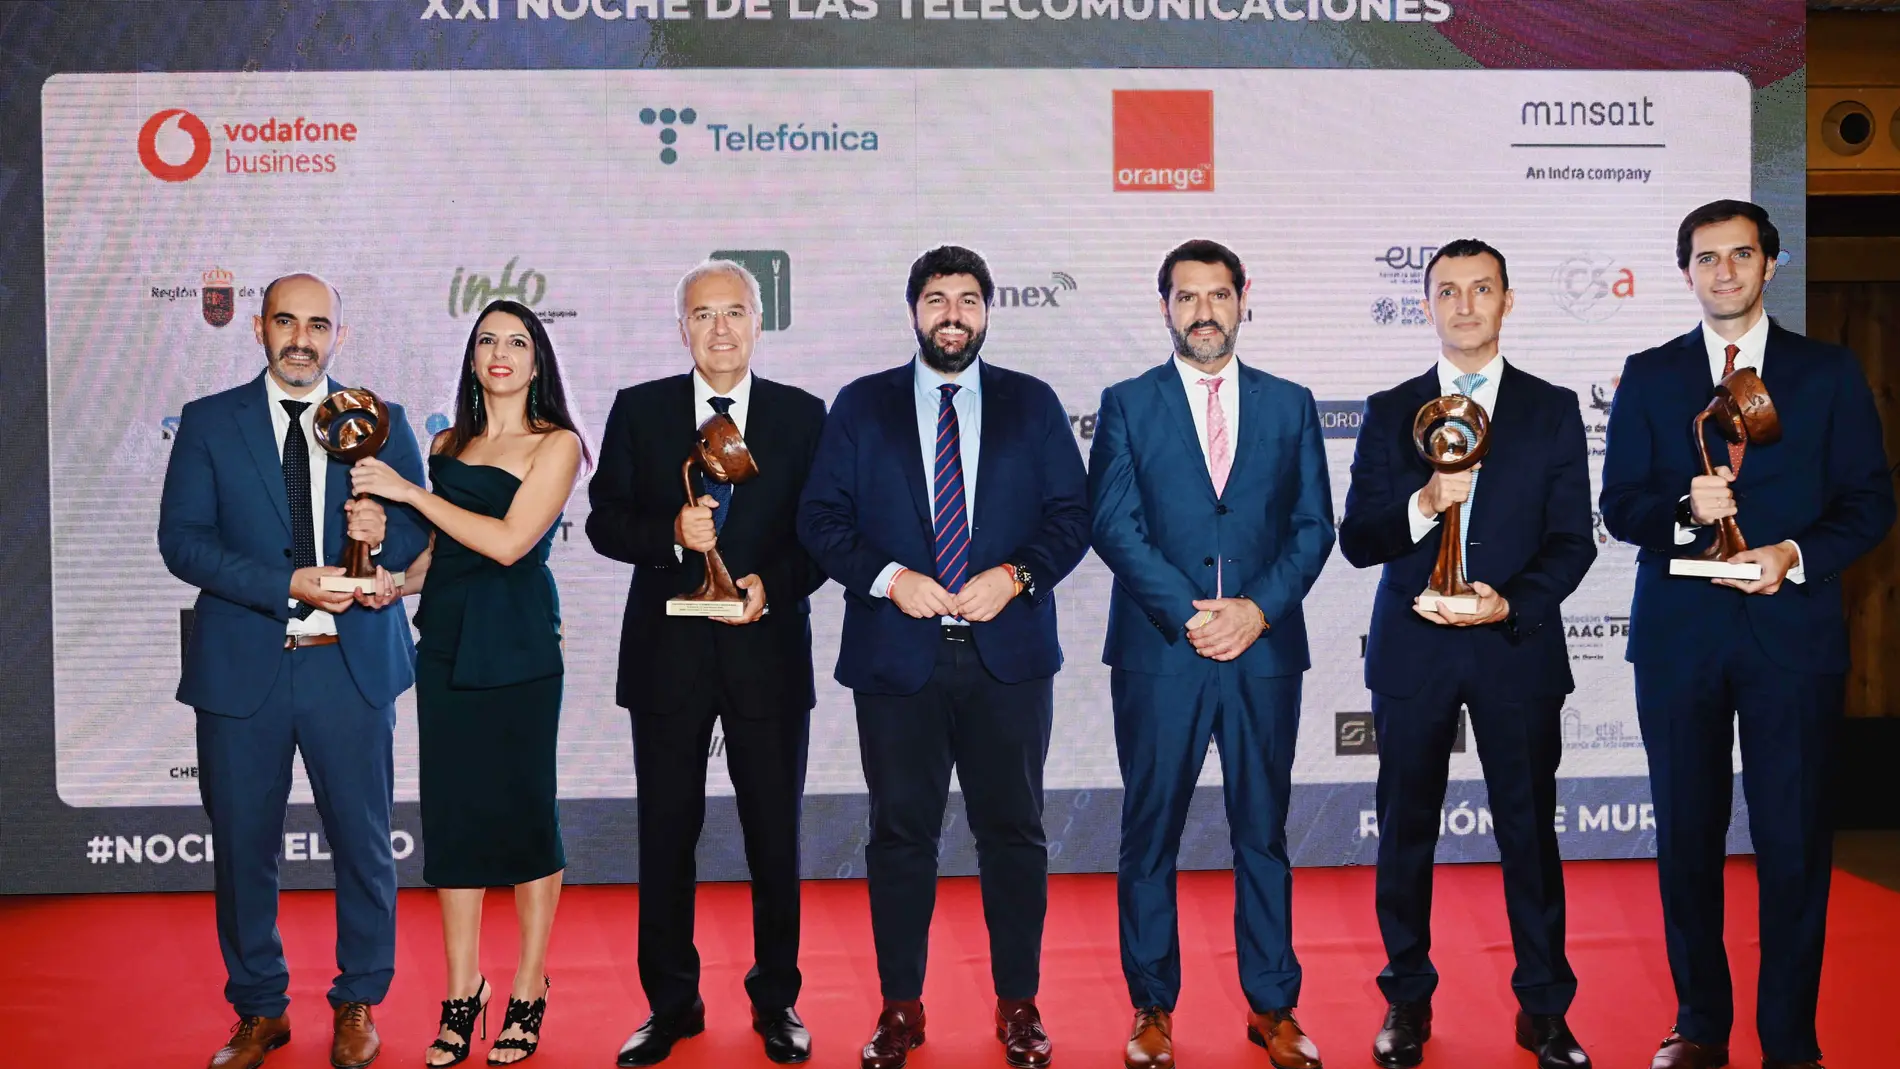 El jefe del Ejecutivo regional, Fernando López Miras, en la XXI Noche de las TelecomunicacionesCARM22/10/2022